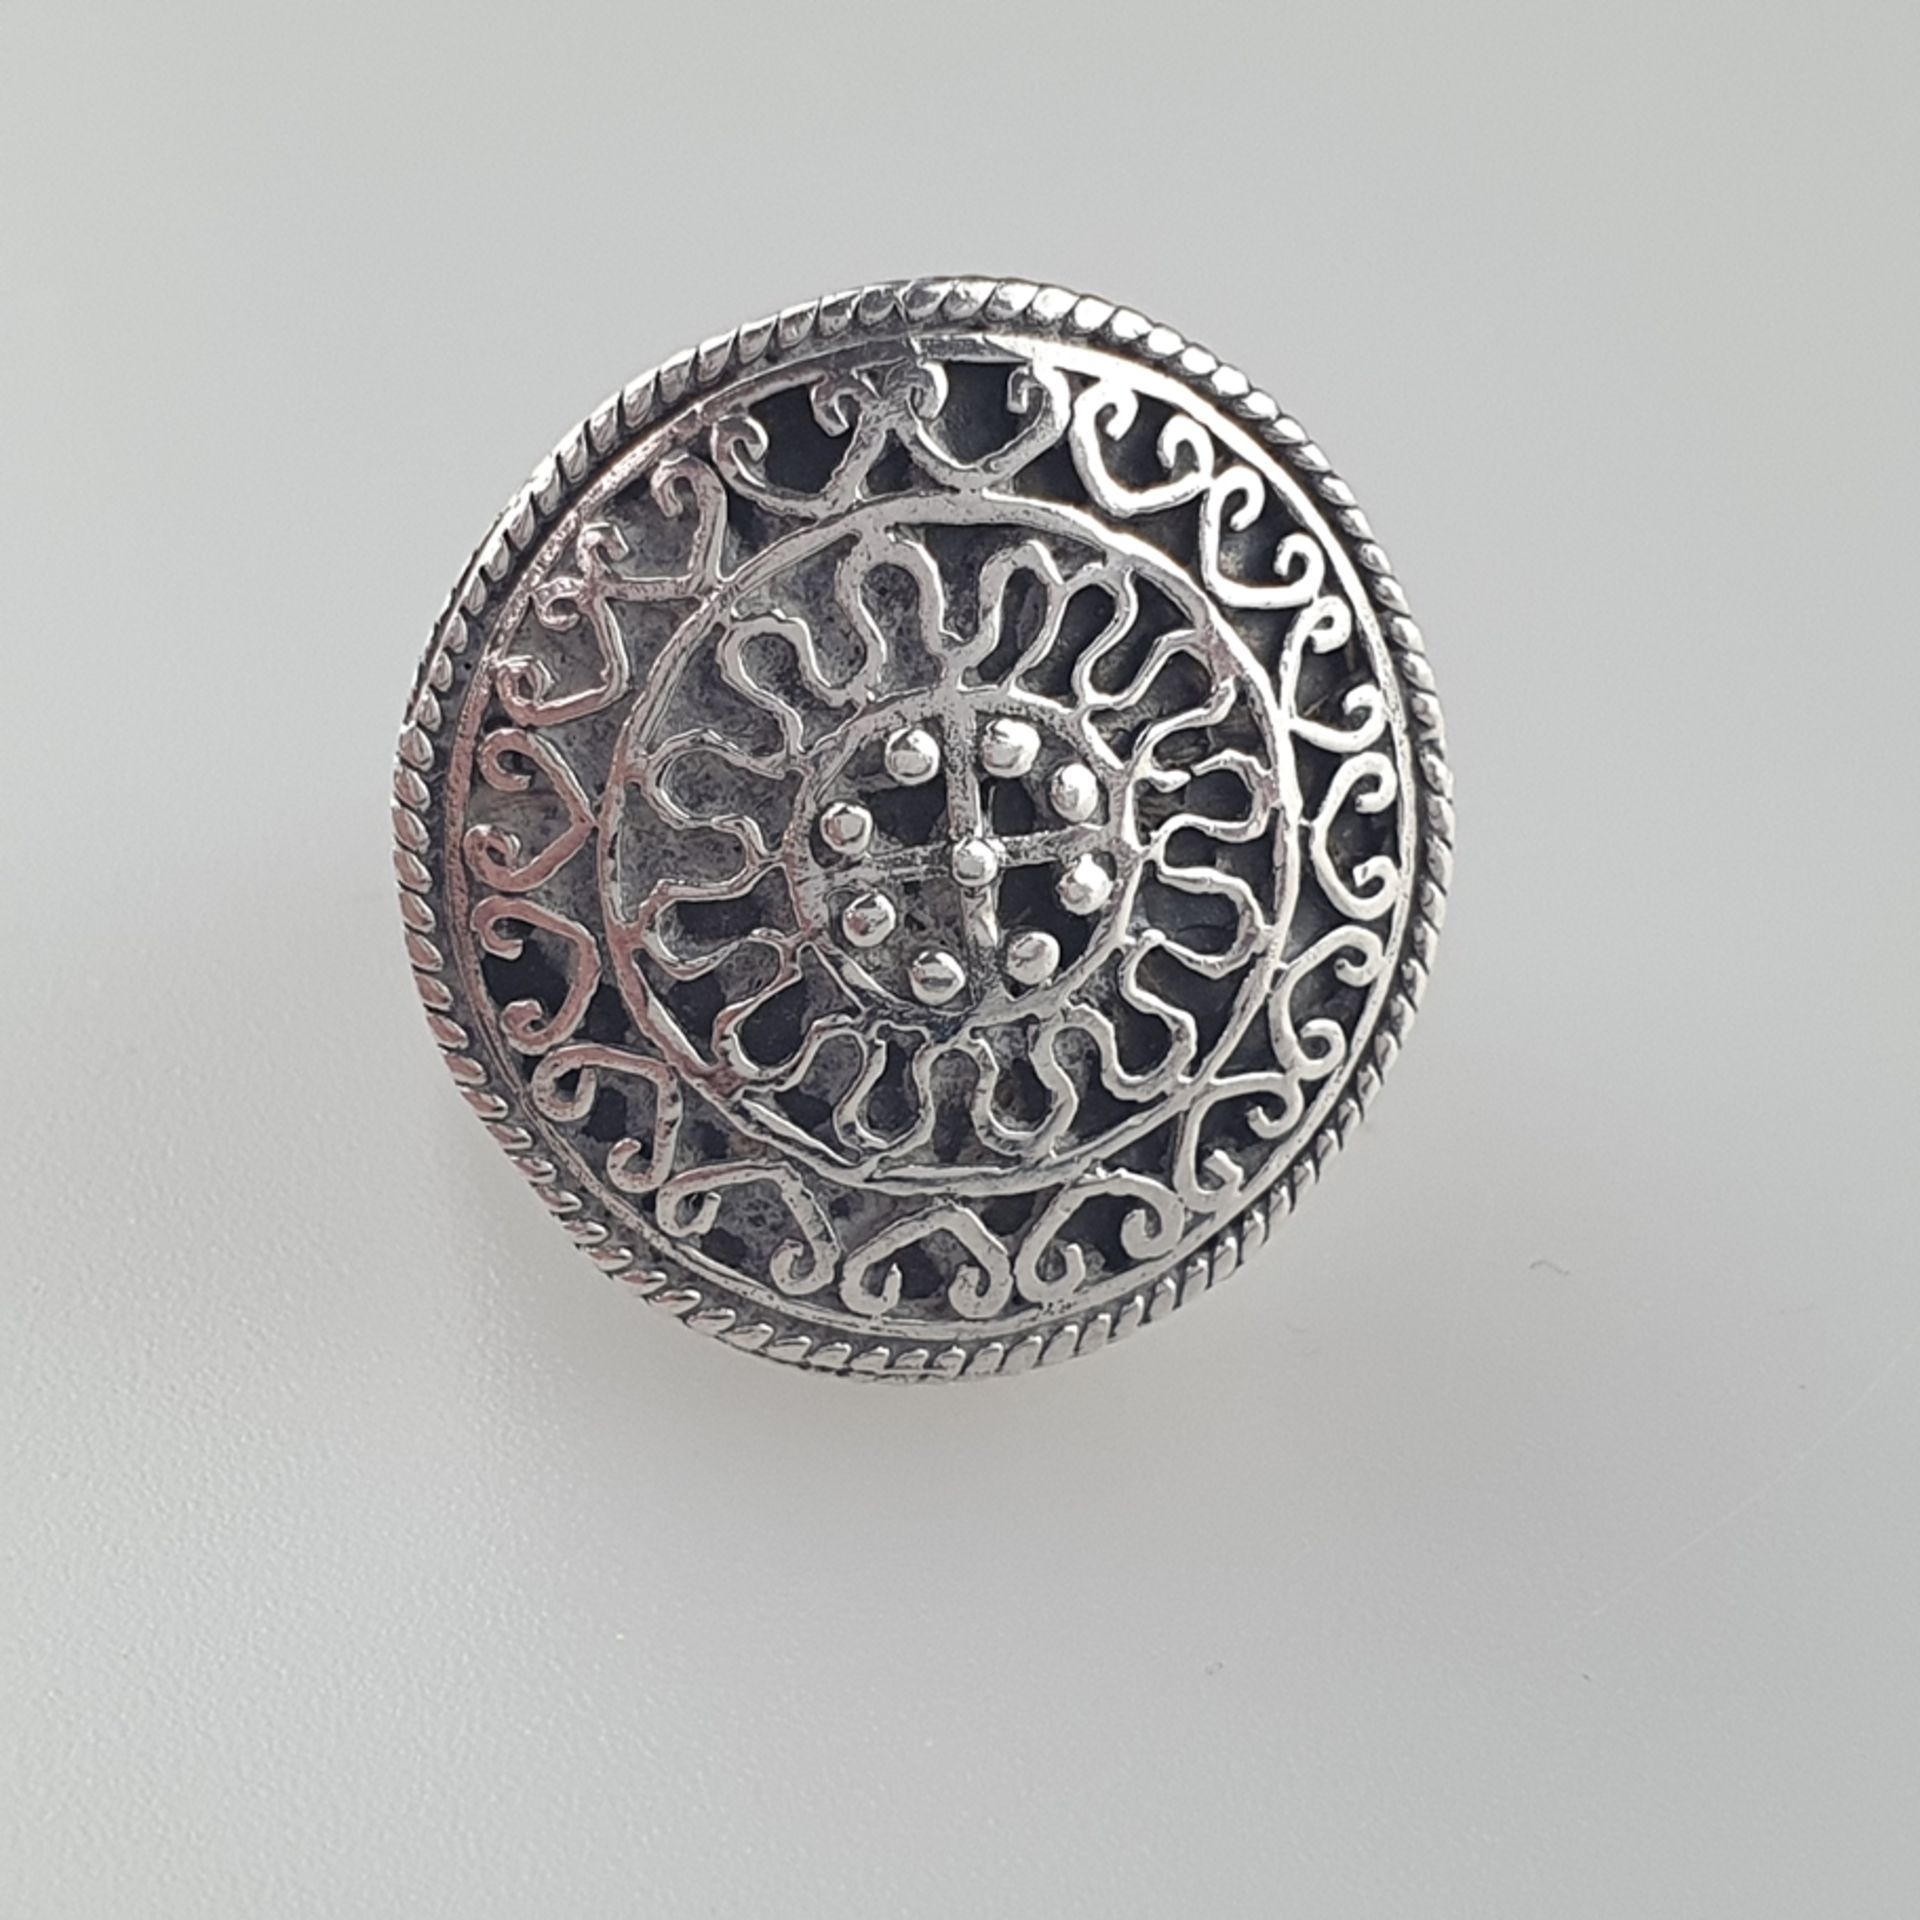 Silberring - runder kunstvoll durchbrochener Ringkopf orientalischer Prägung, Silberschmiedearbeit - Image 2 of 4